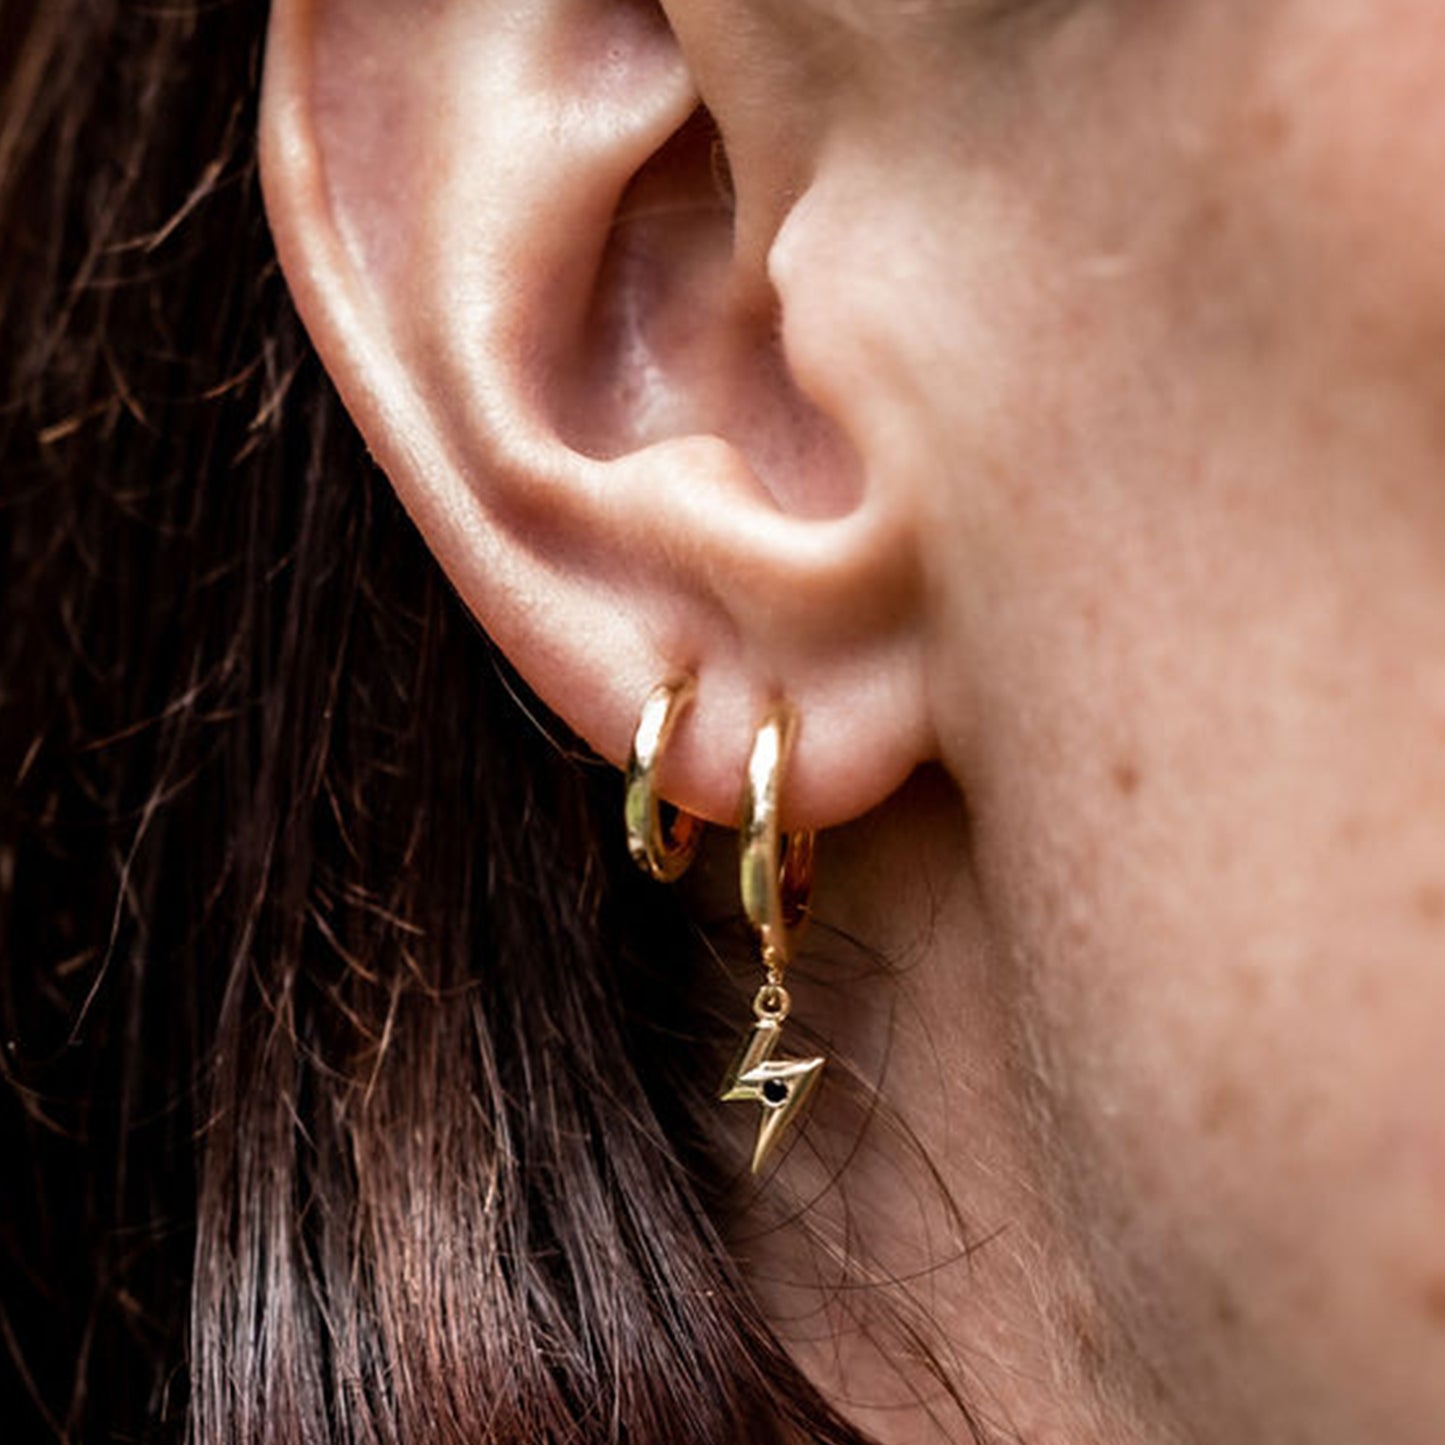 Charm Hoop Earrings in 14ct Gold Vermeil with Black Onyx